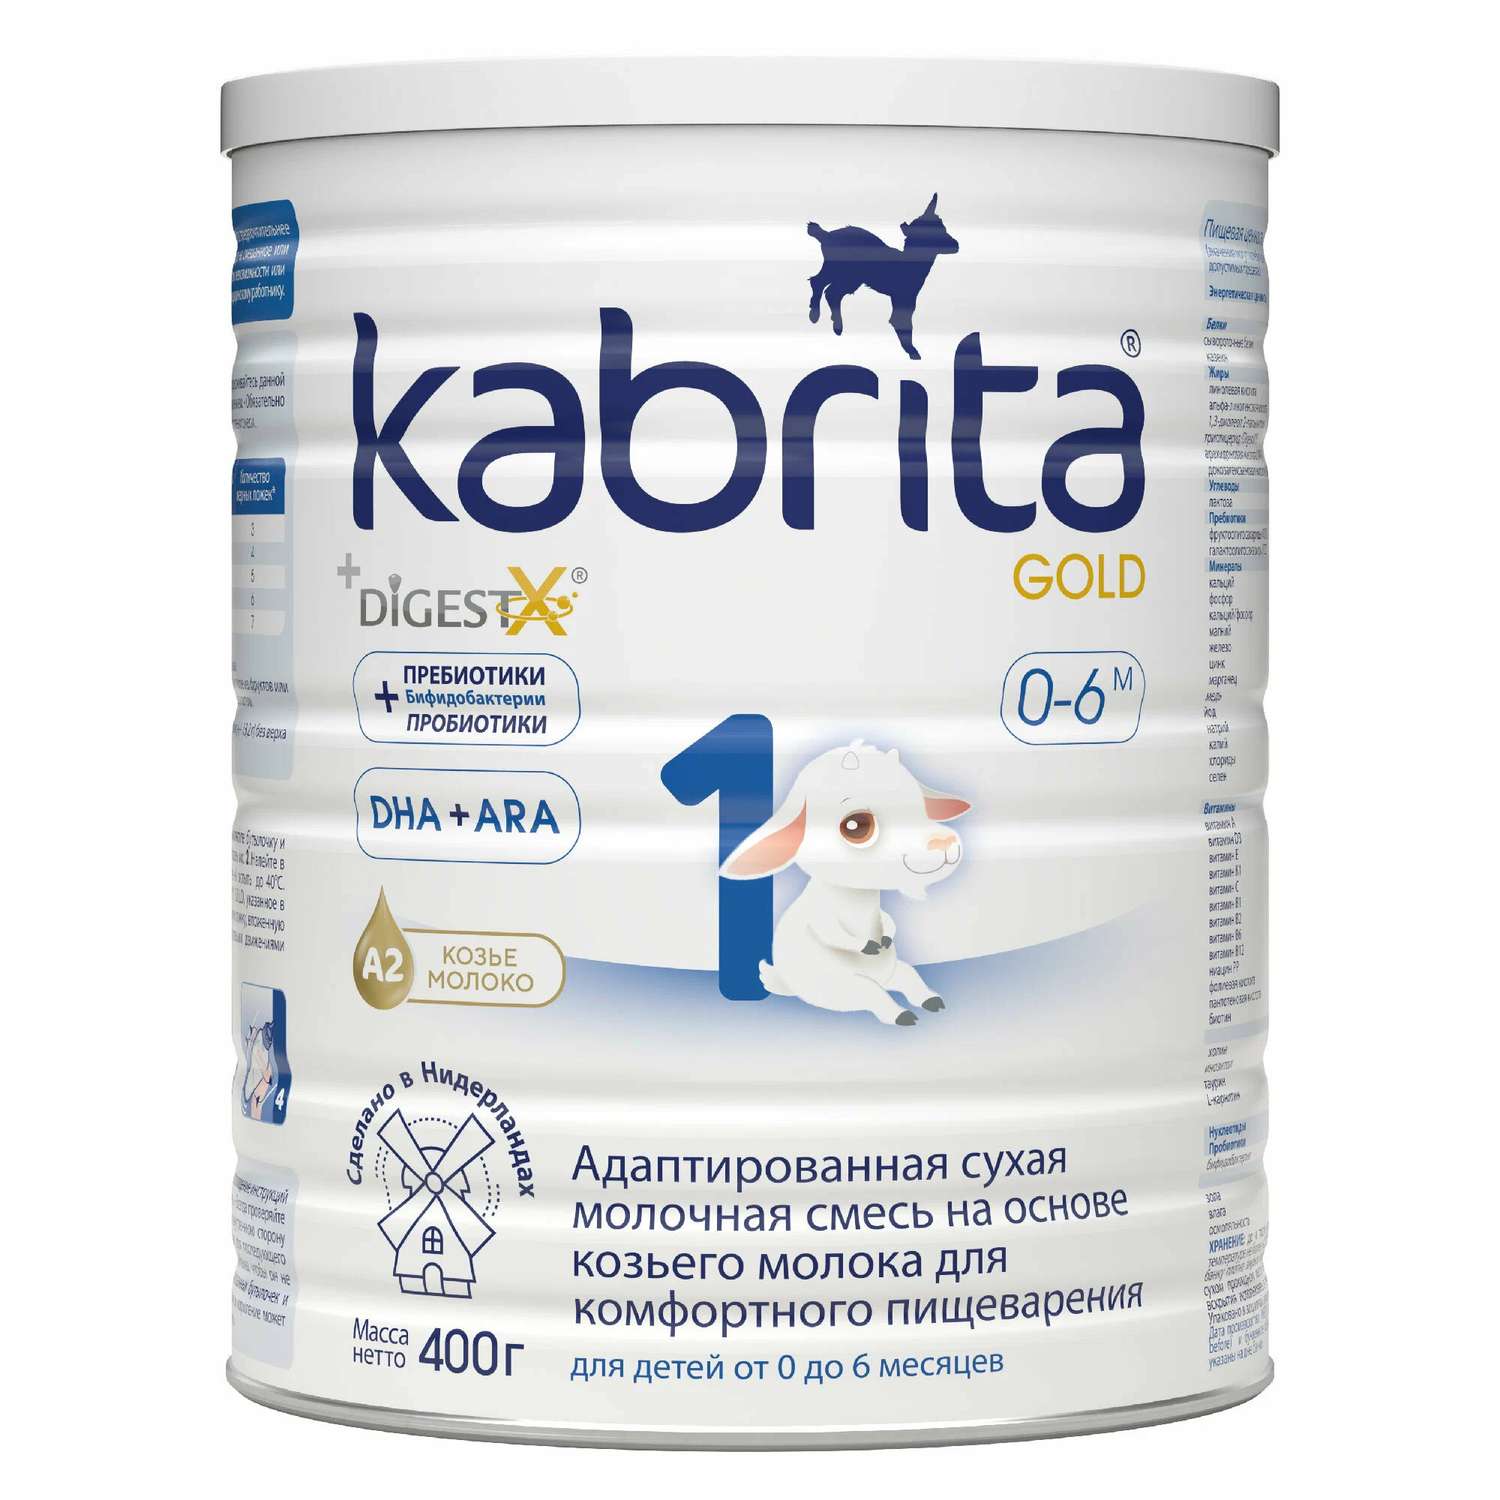 Набор Kabrita 1 Gold смесь молочная 800 гр 2шт - фото 1